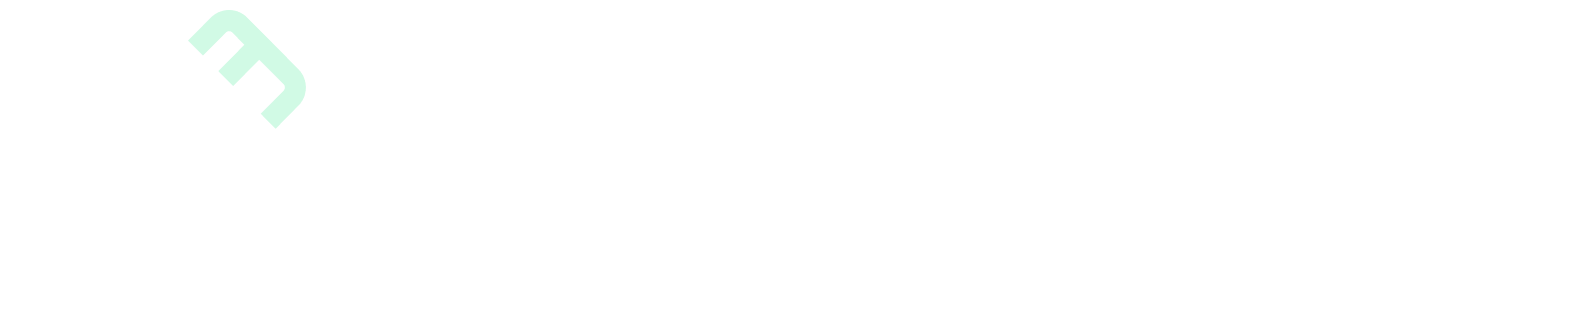 RentDrop Name - White